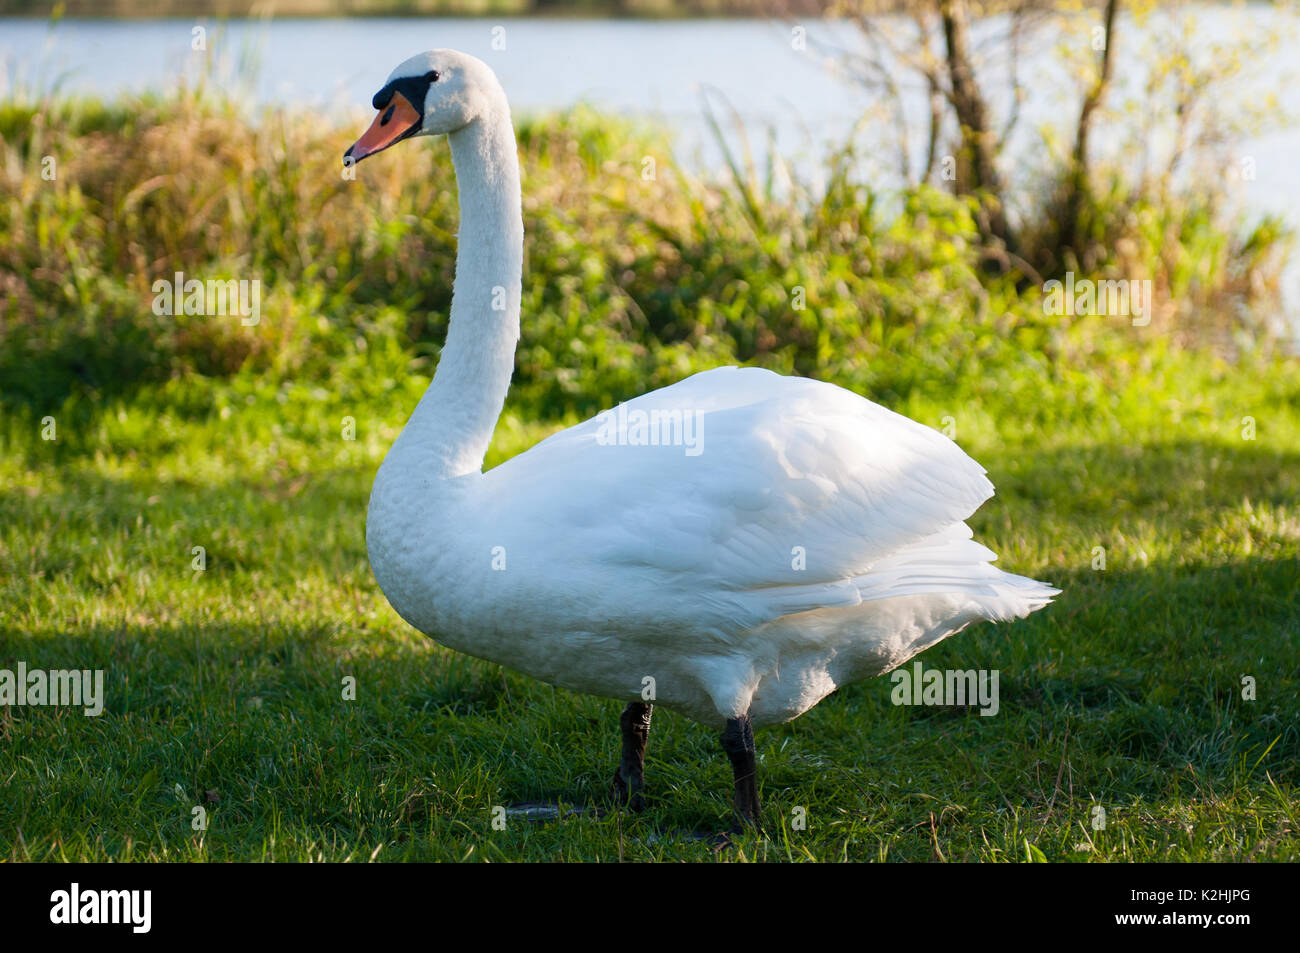 White swan on the lake. Stock Photo